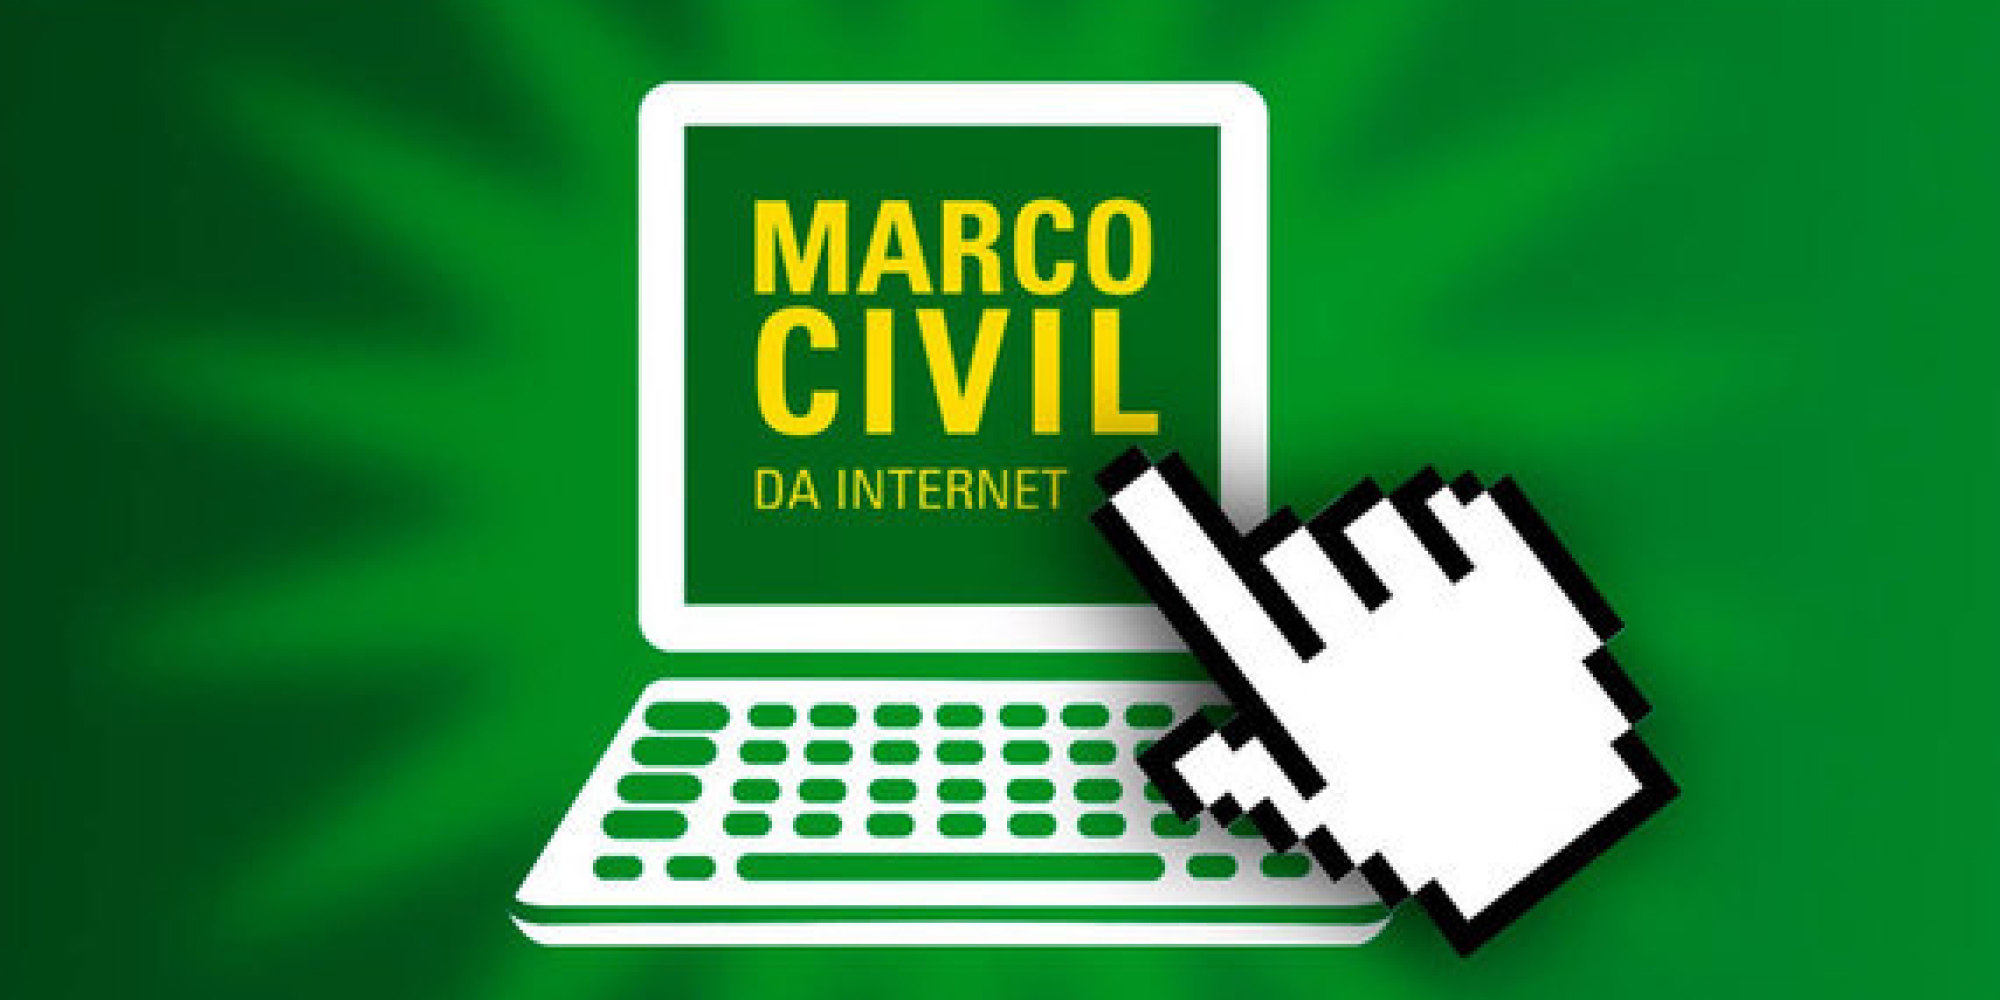 ONU adota modelo de privacidade digital brasileiro